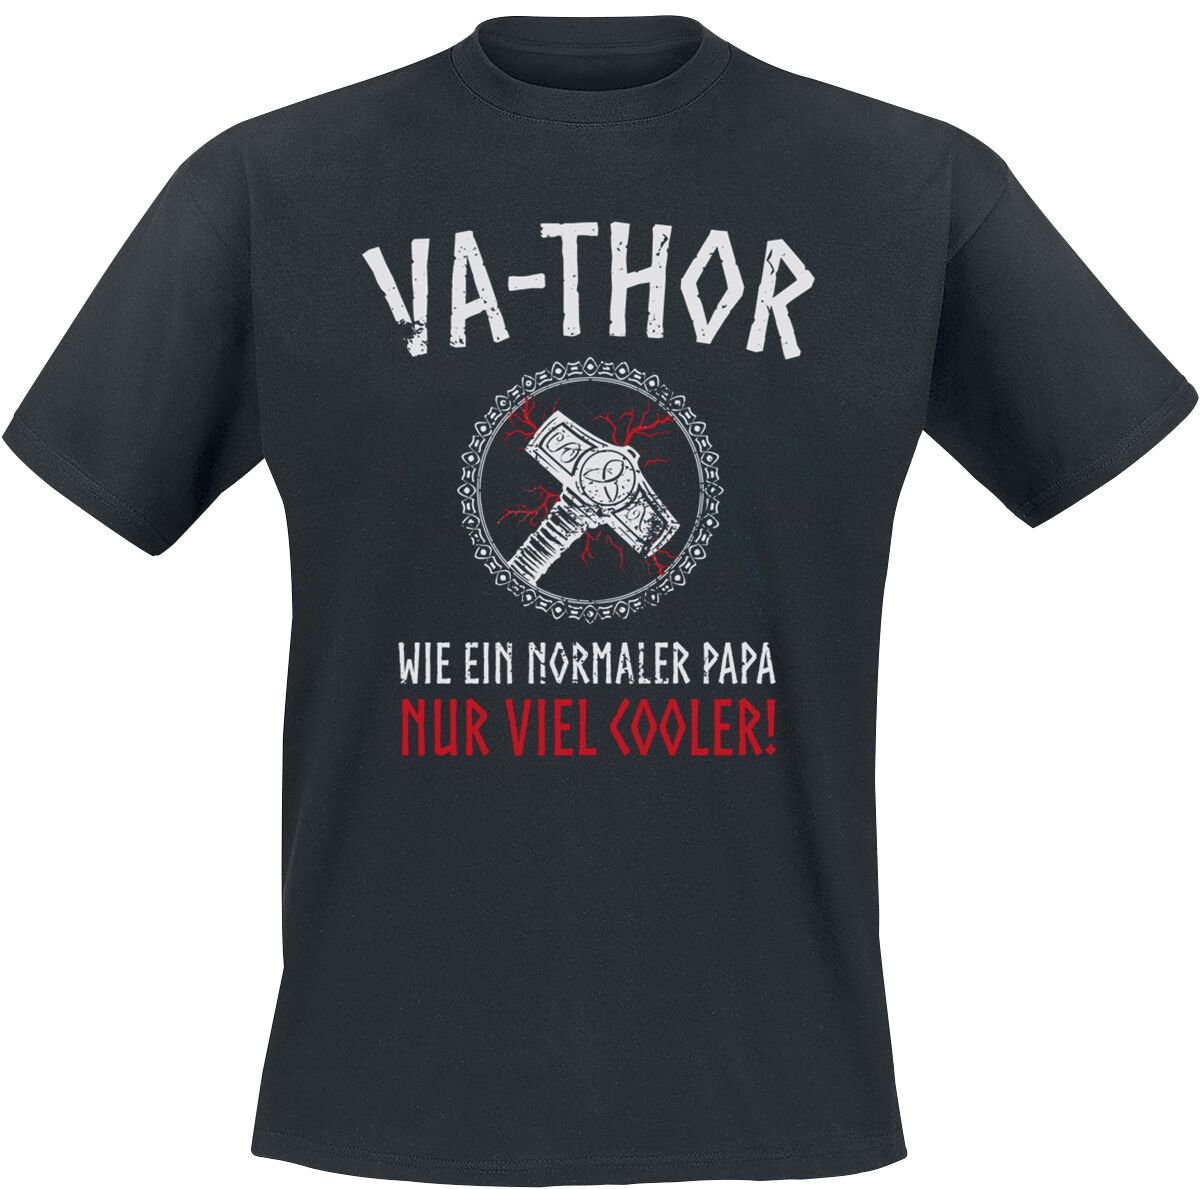 Familie & Freunde T-Shirt - Va-Thor - S bis 4XL - für Männer - Größe S - schwarz